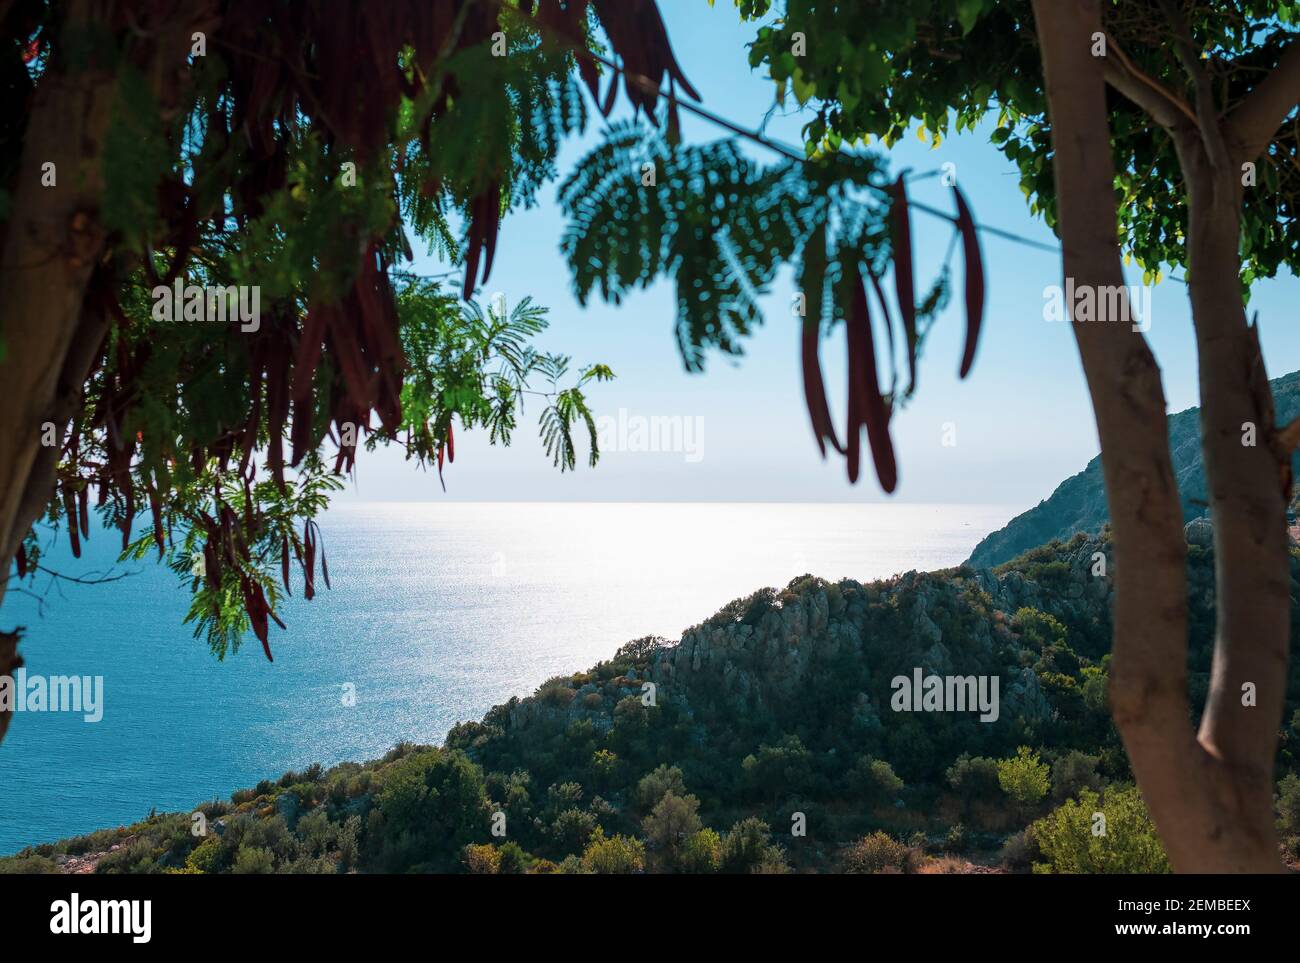 Vue sur la côte méditerranéenne à travers les arbres, le sud de la Turquie Banque D'Images